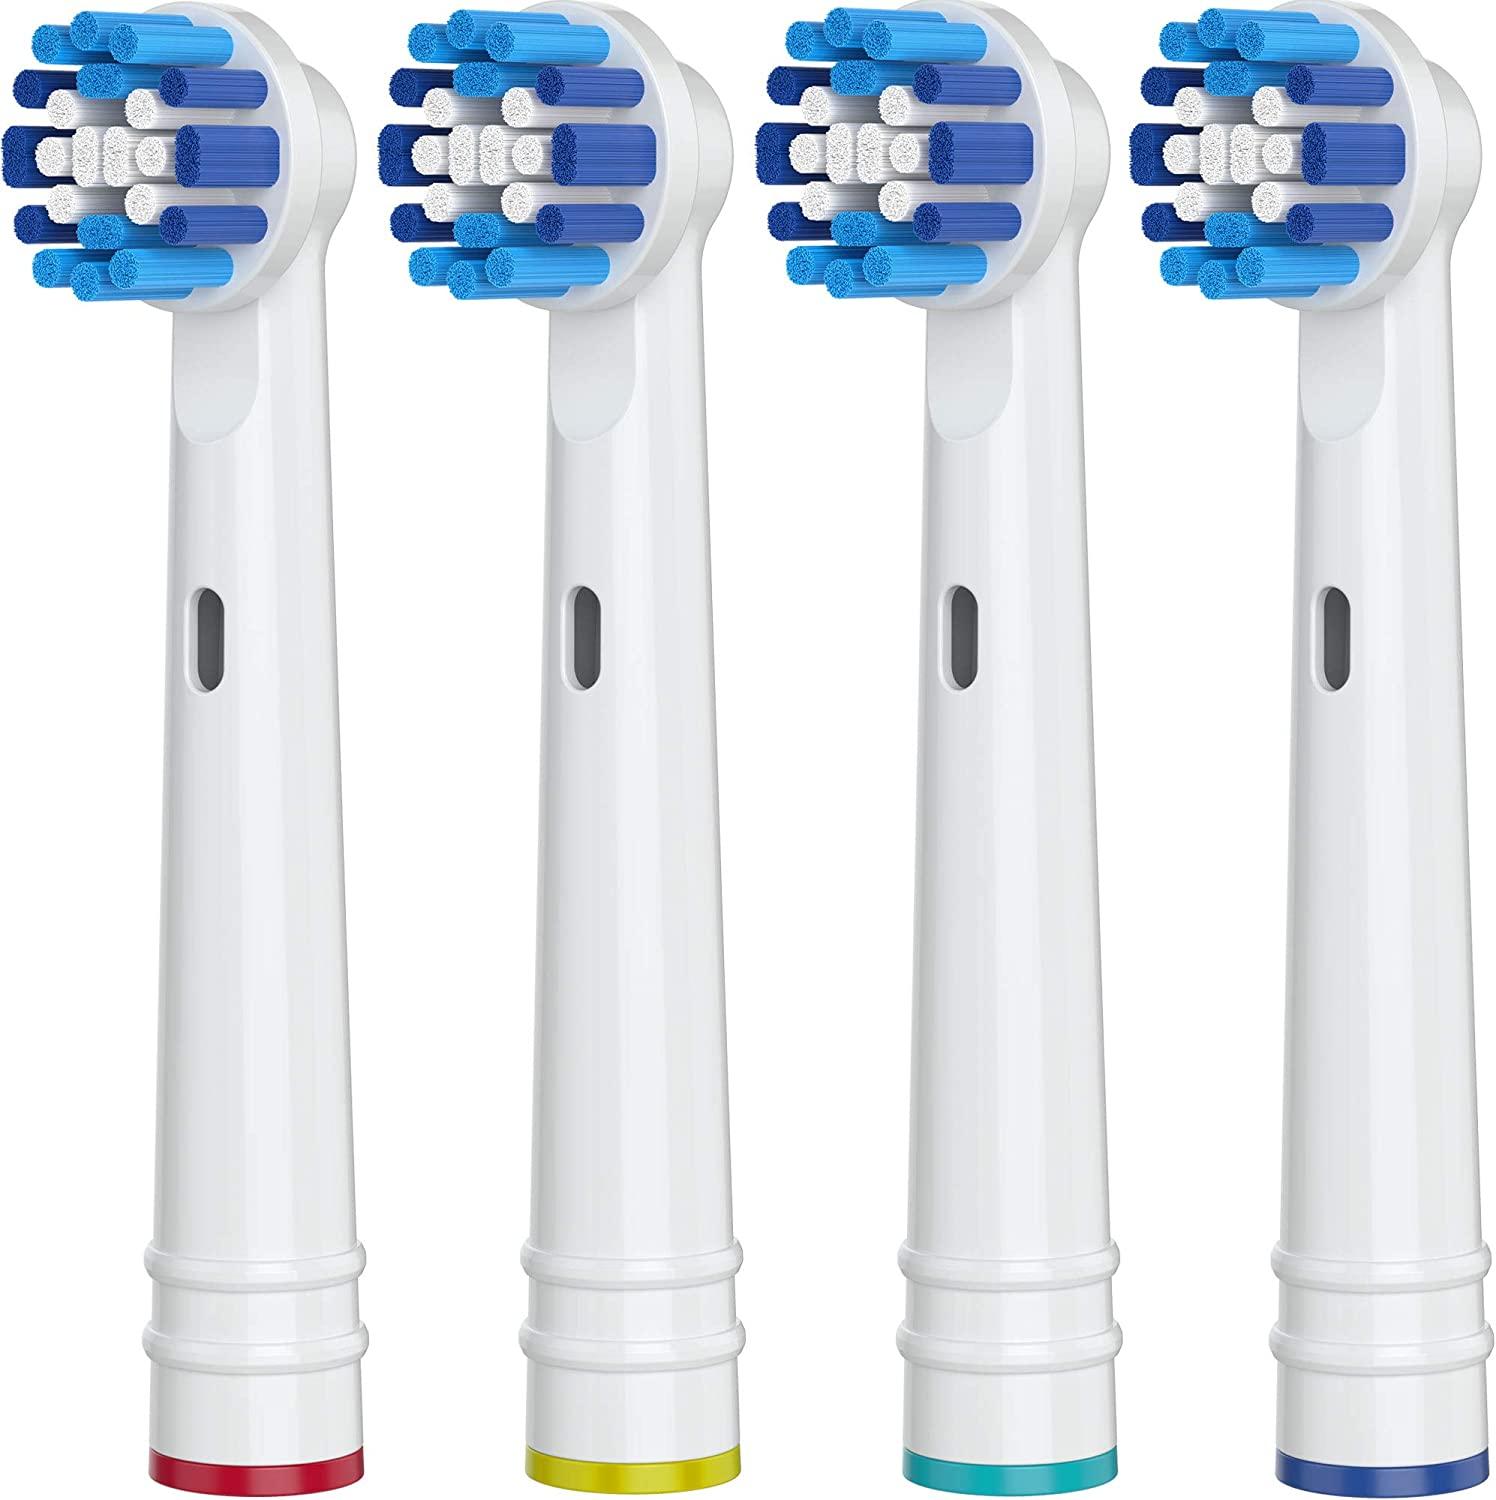 4 Stuks Vervangende Opzetborstels Voor Braun Oral B Elektrische Tandenborstel-Voor Orale B Dagelijkse Schoonmaak Tandenborstel Opzetborstels